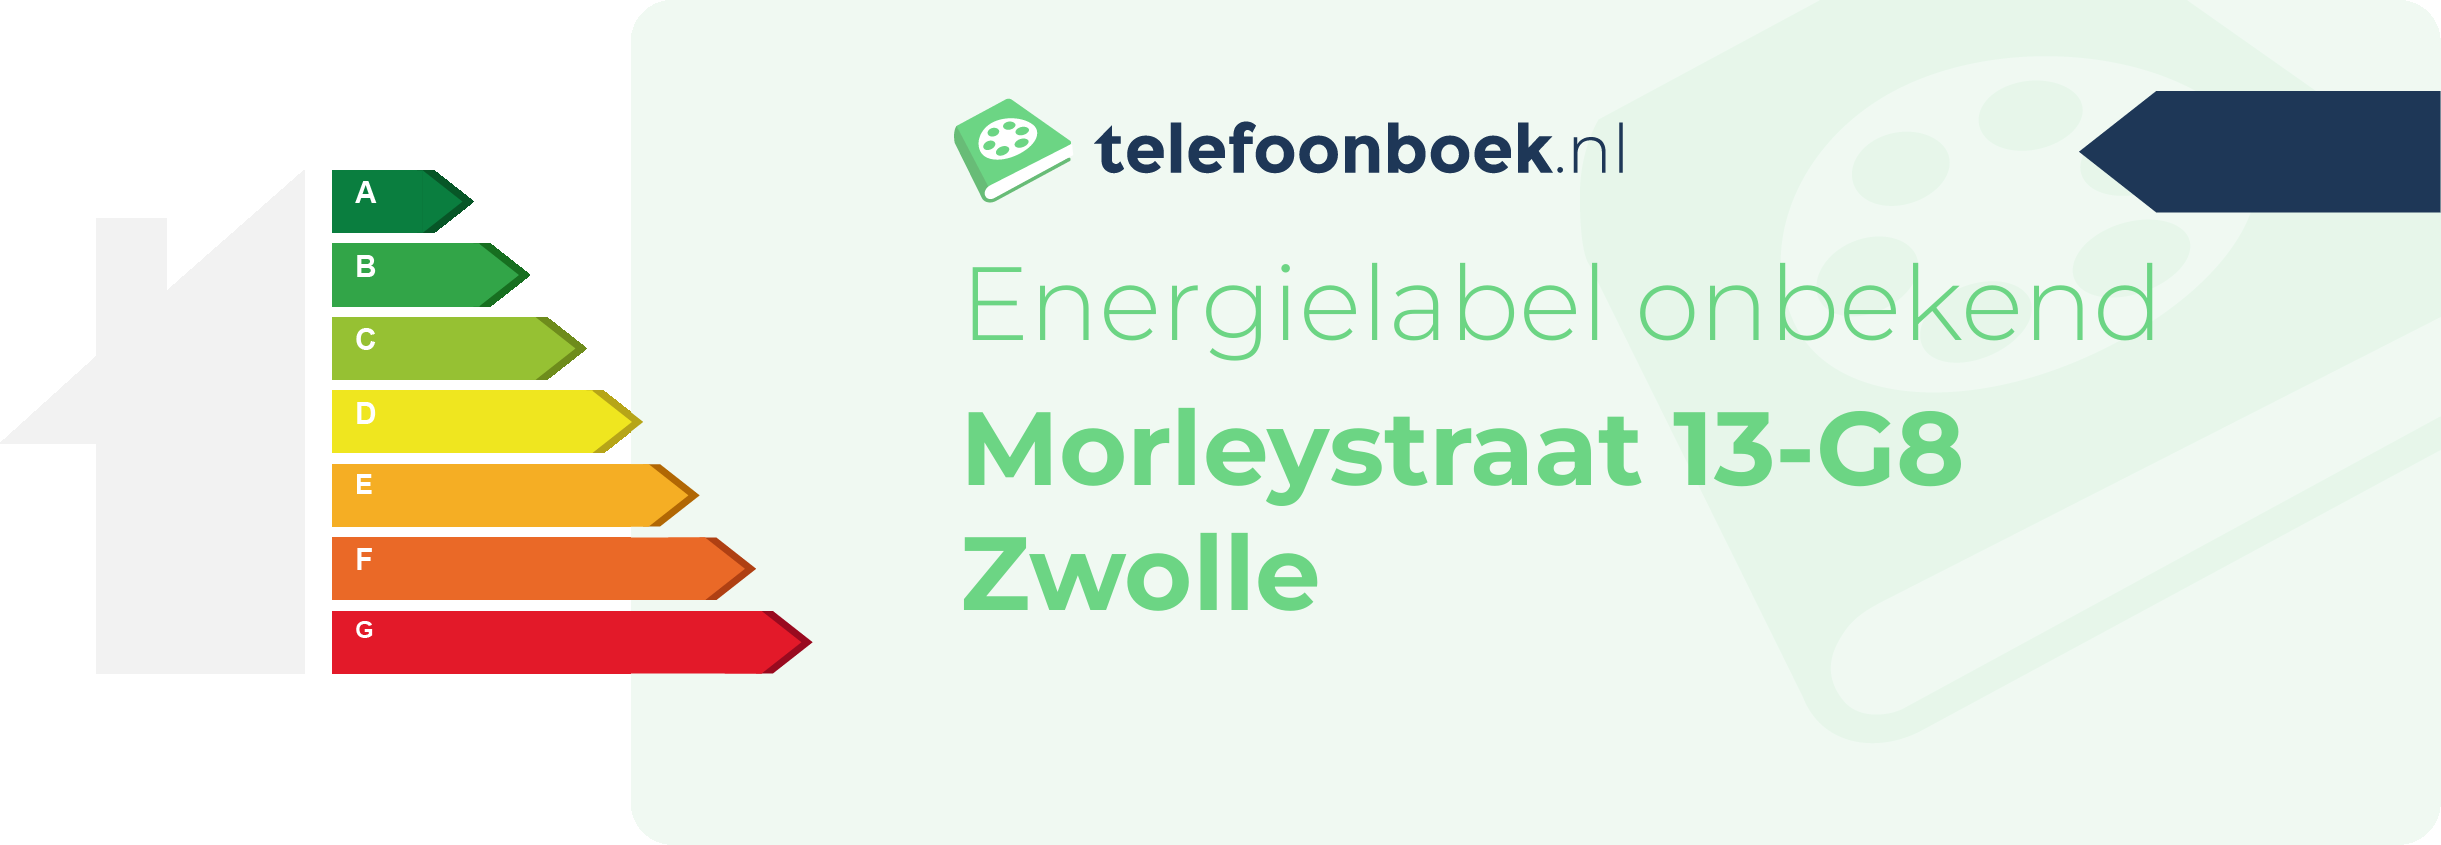 Energielabel Morleystraat 13-G8 Zwolle